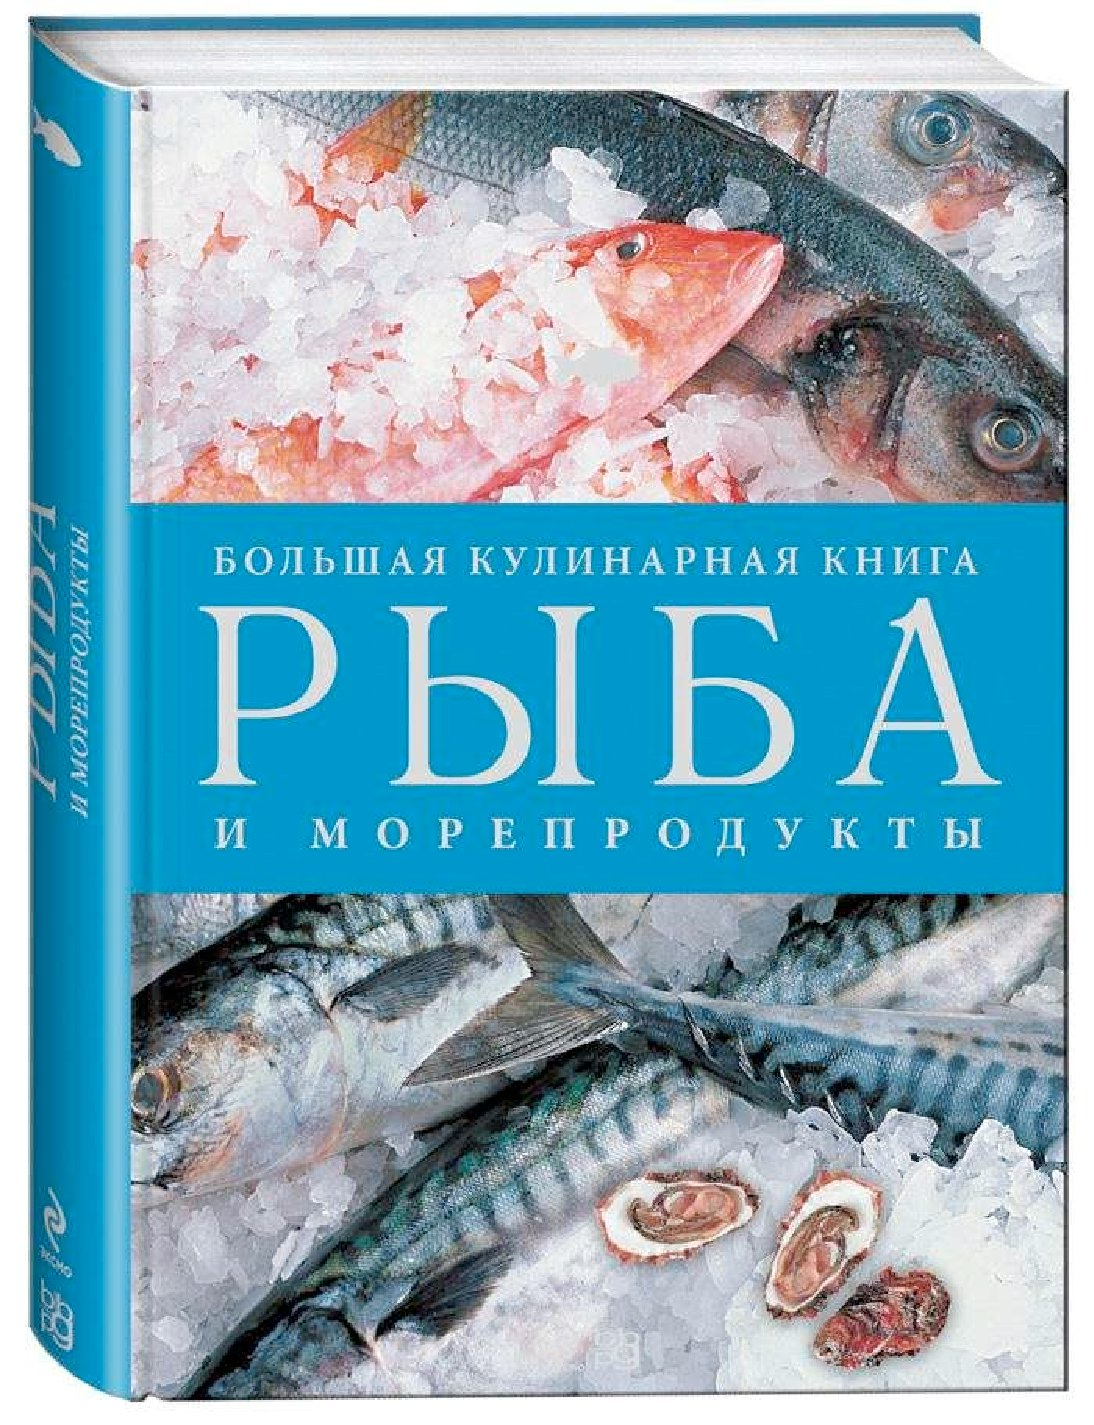 Рыба книги купить. Большая кулинарная книга рыба и морепродукты. Книги про рыб. Кулинарная книга о рыбе. Книга Эксмо рыба и морепродукты.